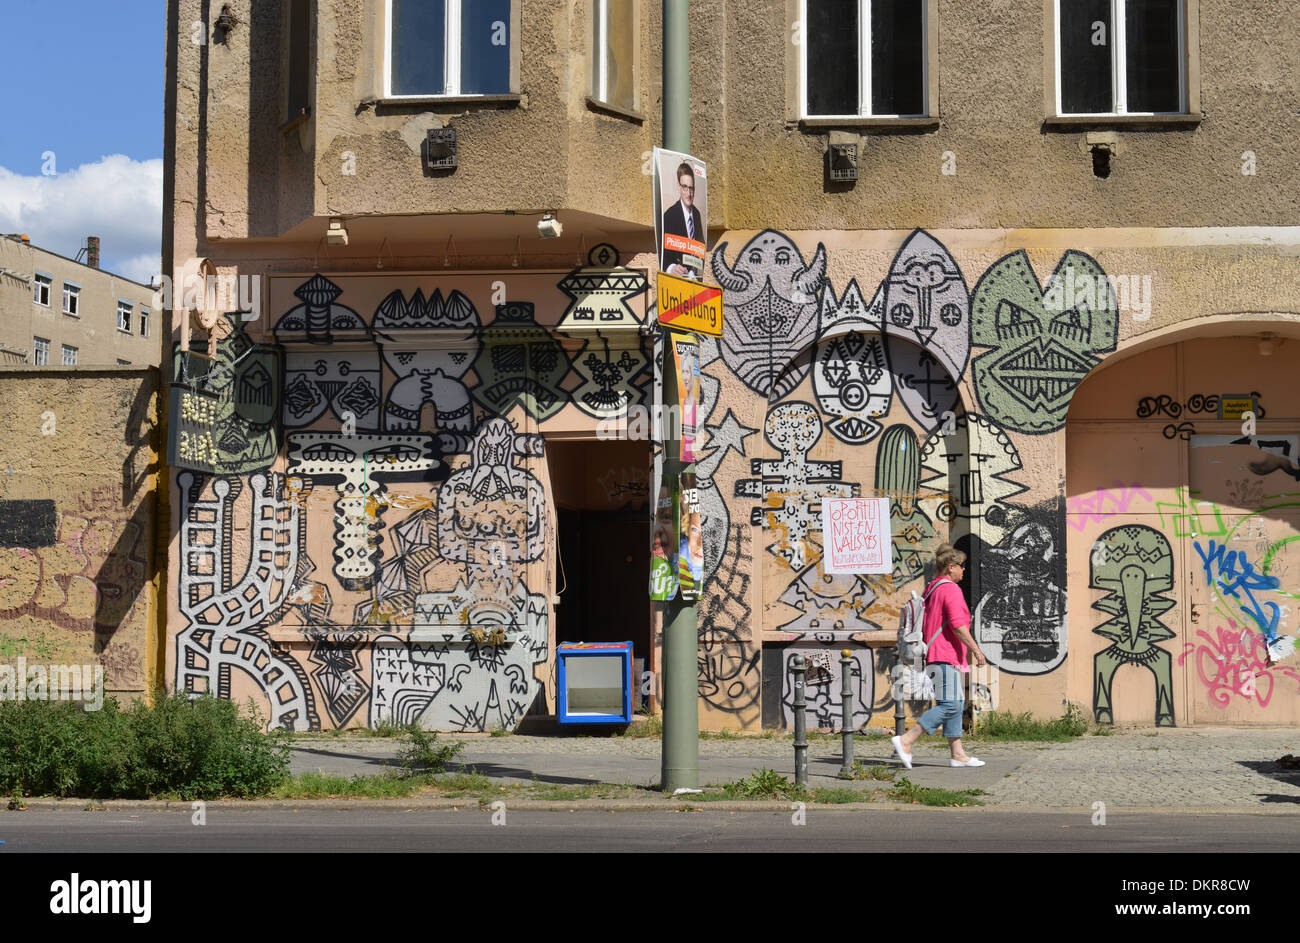 Graffitis, Chausseestrasse, Mitte, Berlin, Deutschland Stock Photo